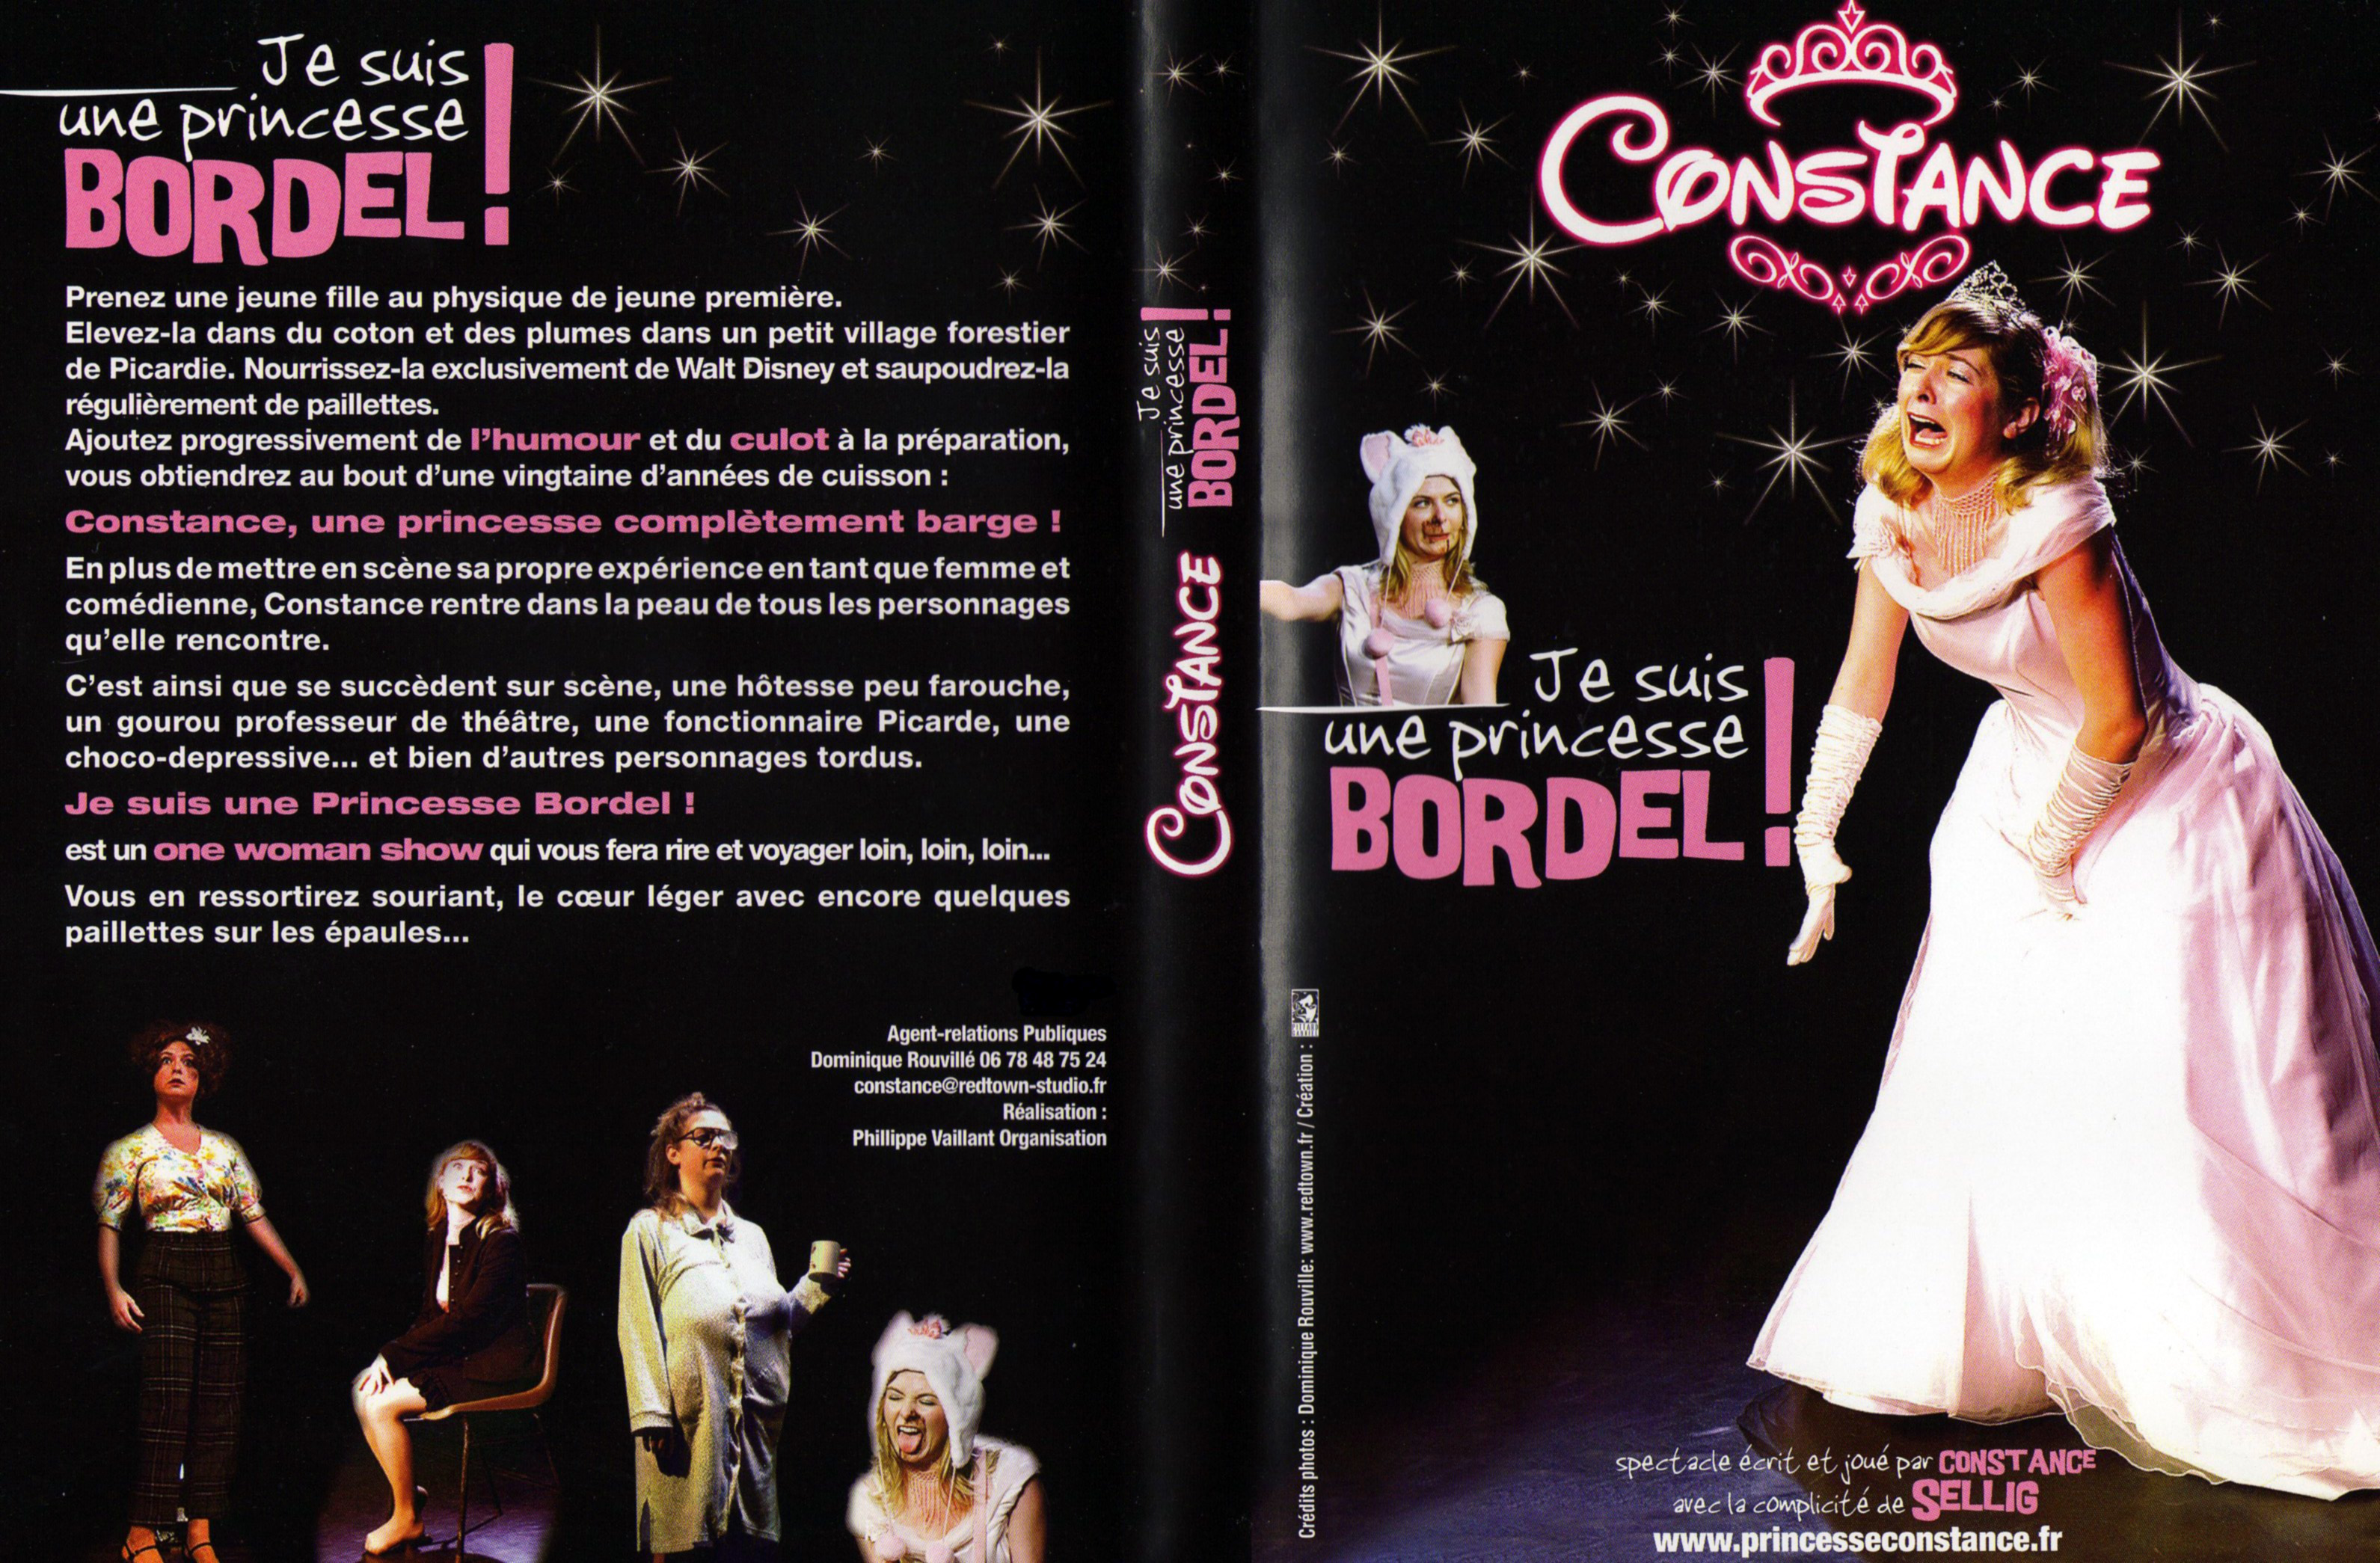 Jaquette DVD Constance - Je suis une princesse bordel